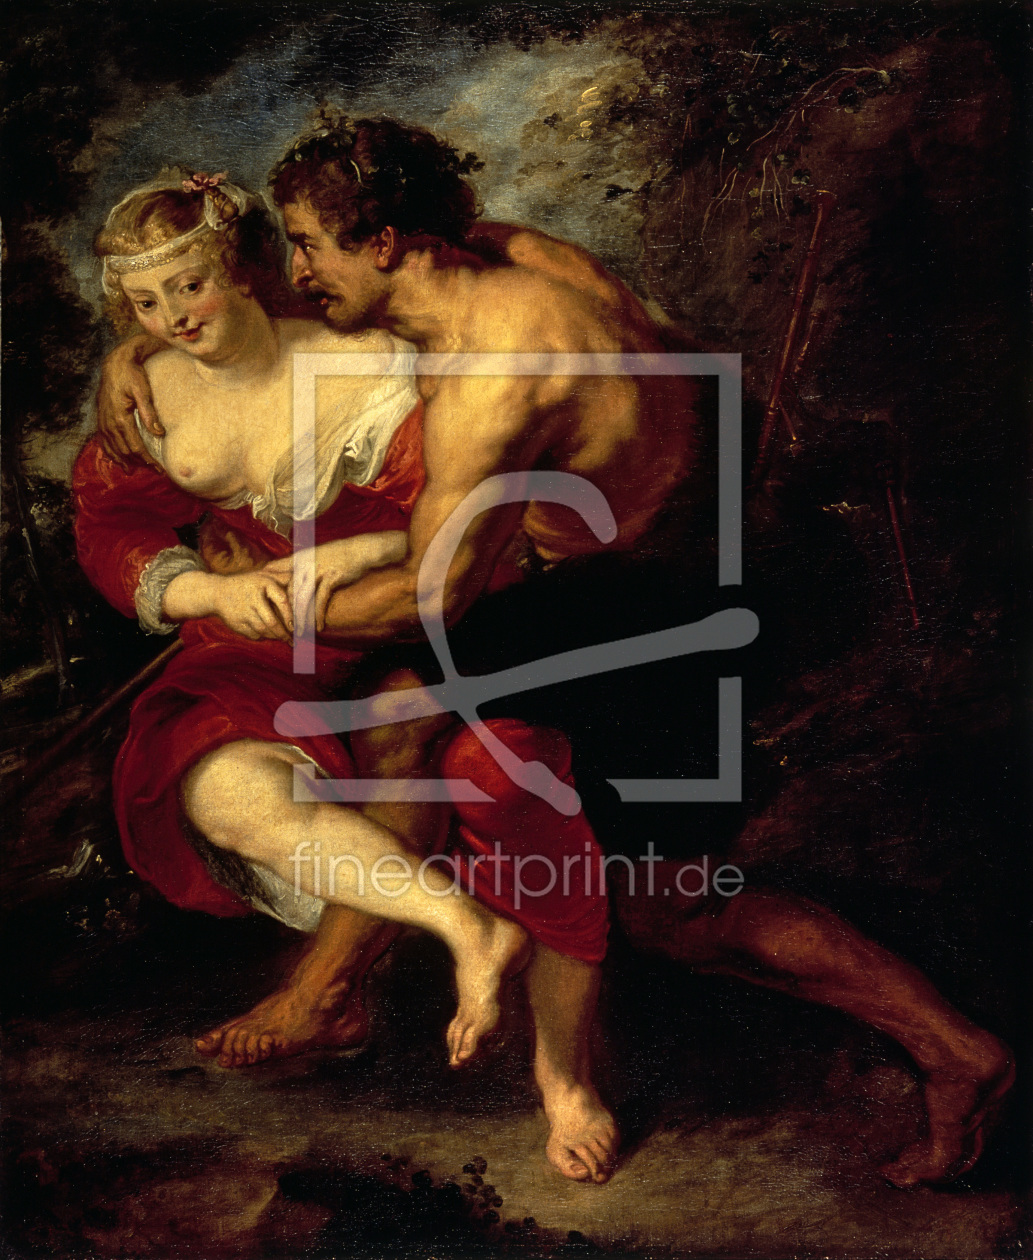 Bild-Nr.: 30005156 P.P.Rubens / Pastoral Scene / c.1638 erstellt von Rubens, Peter Paul